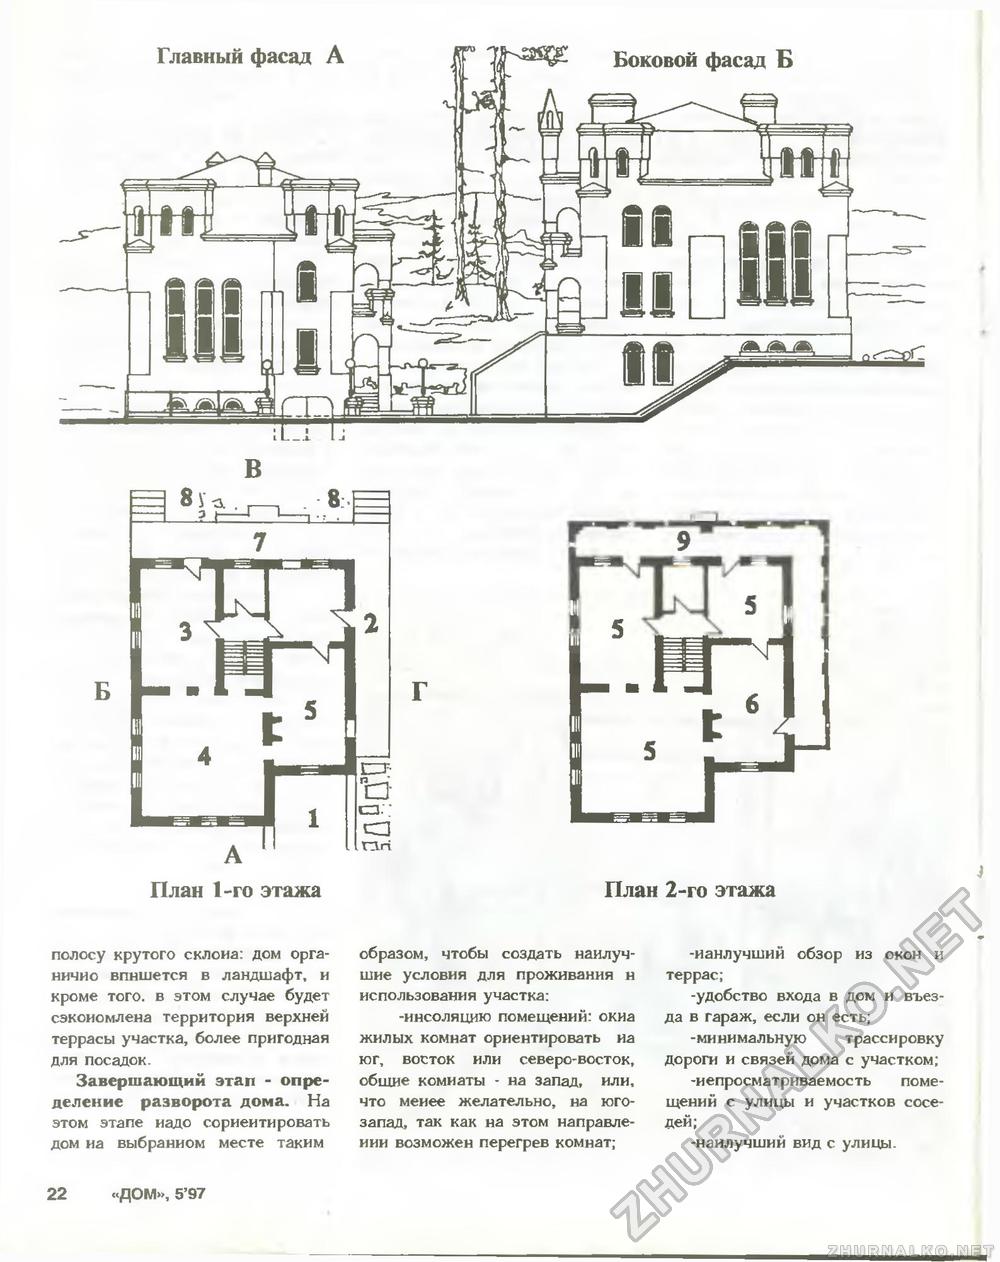 Дом 1997-05, страница 22